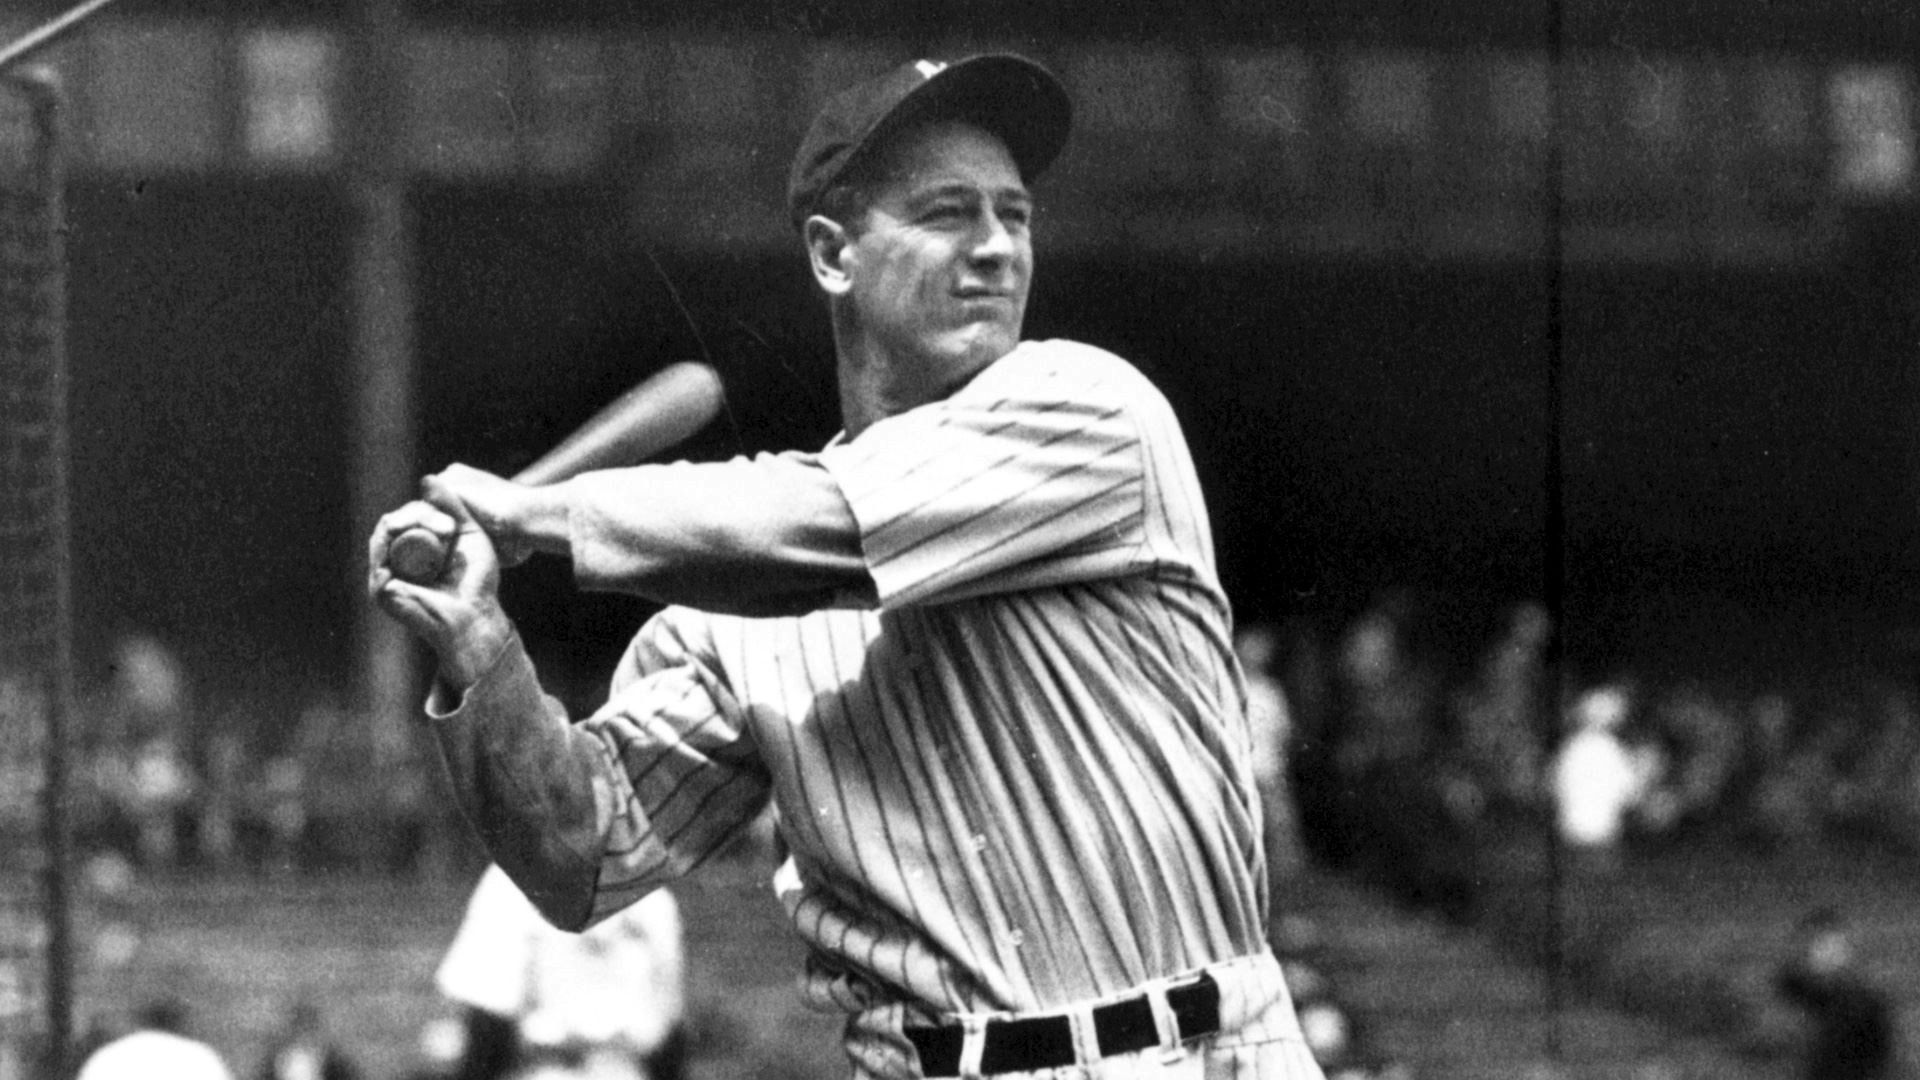 Лу Гериг е сред най-големите легенди на бейзбола. Играе   всичките си 17 сезона за "Ню Йорк Янкис". Записва 2130   последователни мача, което му печели прякора "железния кон".   Печели "тройната корона" през 1934-а, дълго време държи   редица рекорди в бейзбола, като става и първият, чийто номер   се изважда от употреба. Спира с бейзбола заради заболяване. Диагнозата е Амиотрофична латерална склероза, болест, която днес носи неговото име. Болестта засяга двигателните   способности и Гериг умира на 37-годишна възраст   през 1941-а.